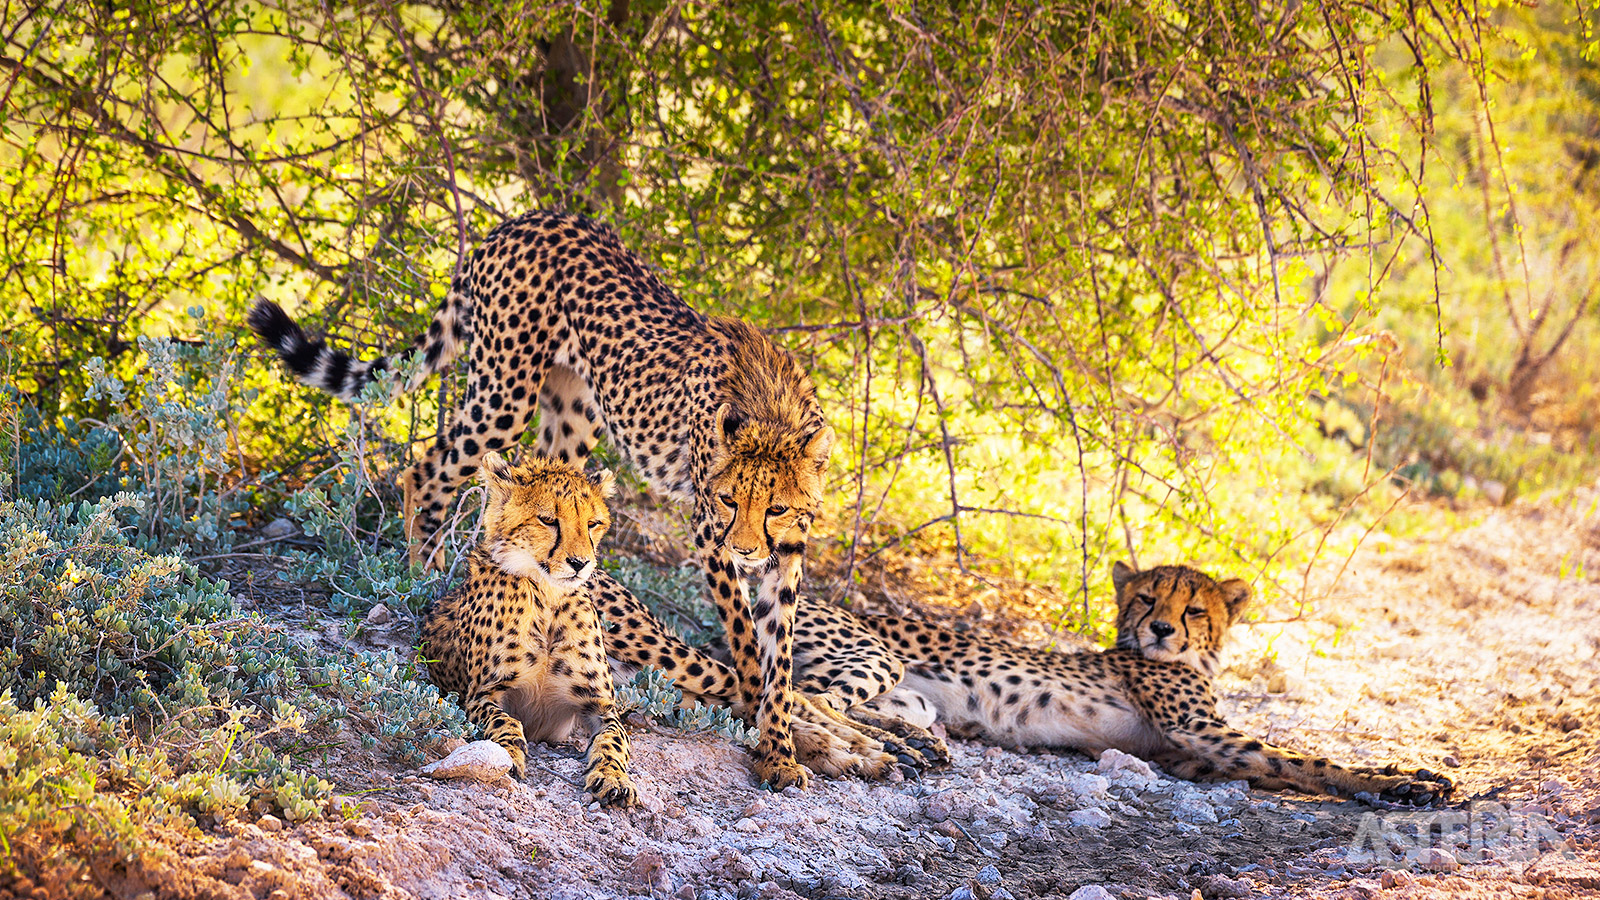 Het landschap ten noorden van Windhoek kent een uitzonderlijke concentratie aan cheetahs